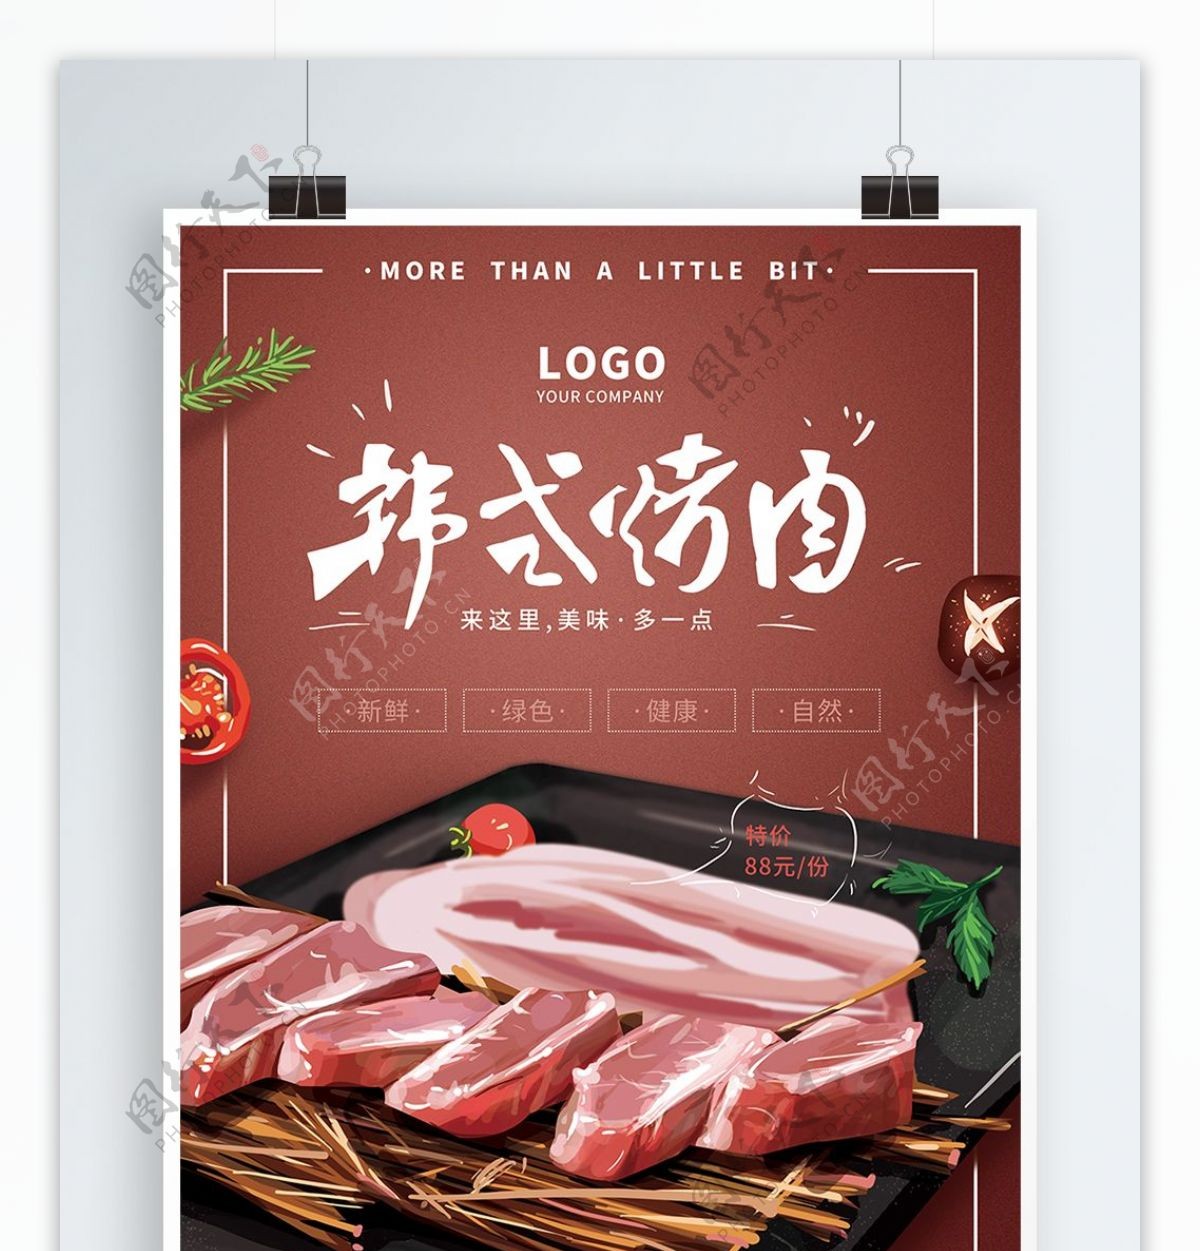 原创手绘韩式烤肉创意海报